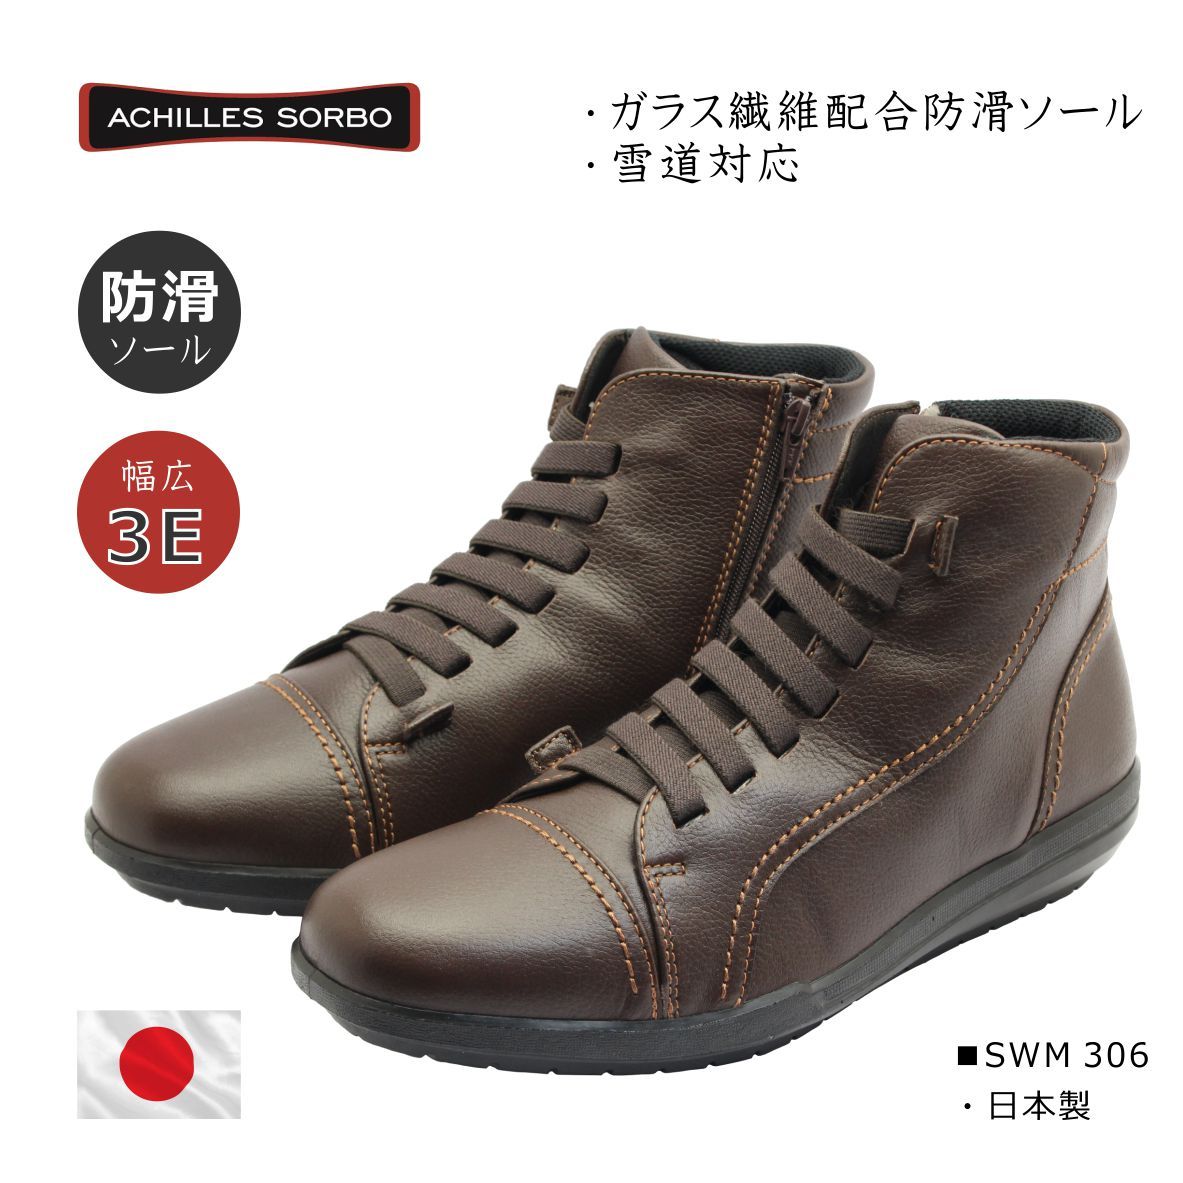 Achilles SORBO アキレス ソルボ メンズ ウォーキング スノー ブーツ SWM 306 日本製 3E 本革 靴 コーヒー ブラウン